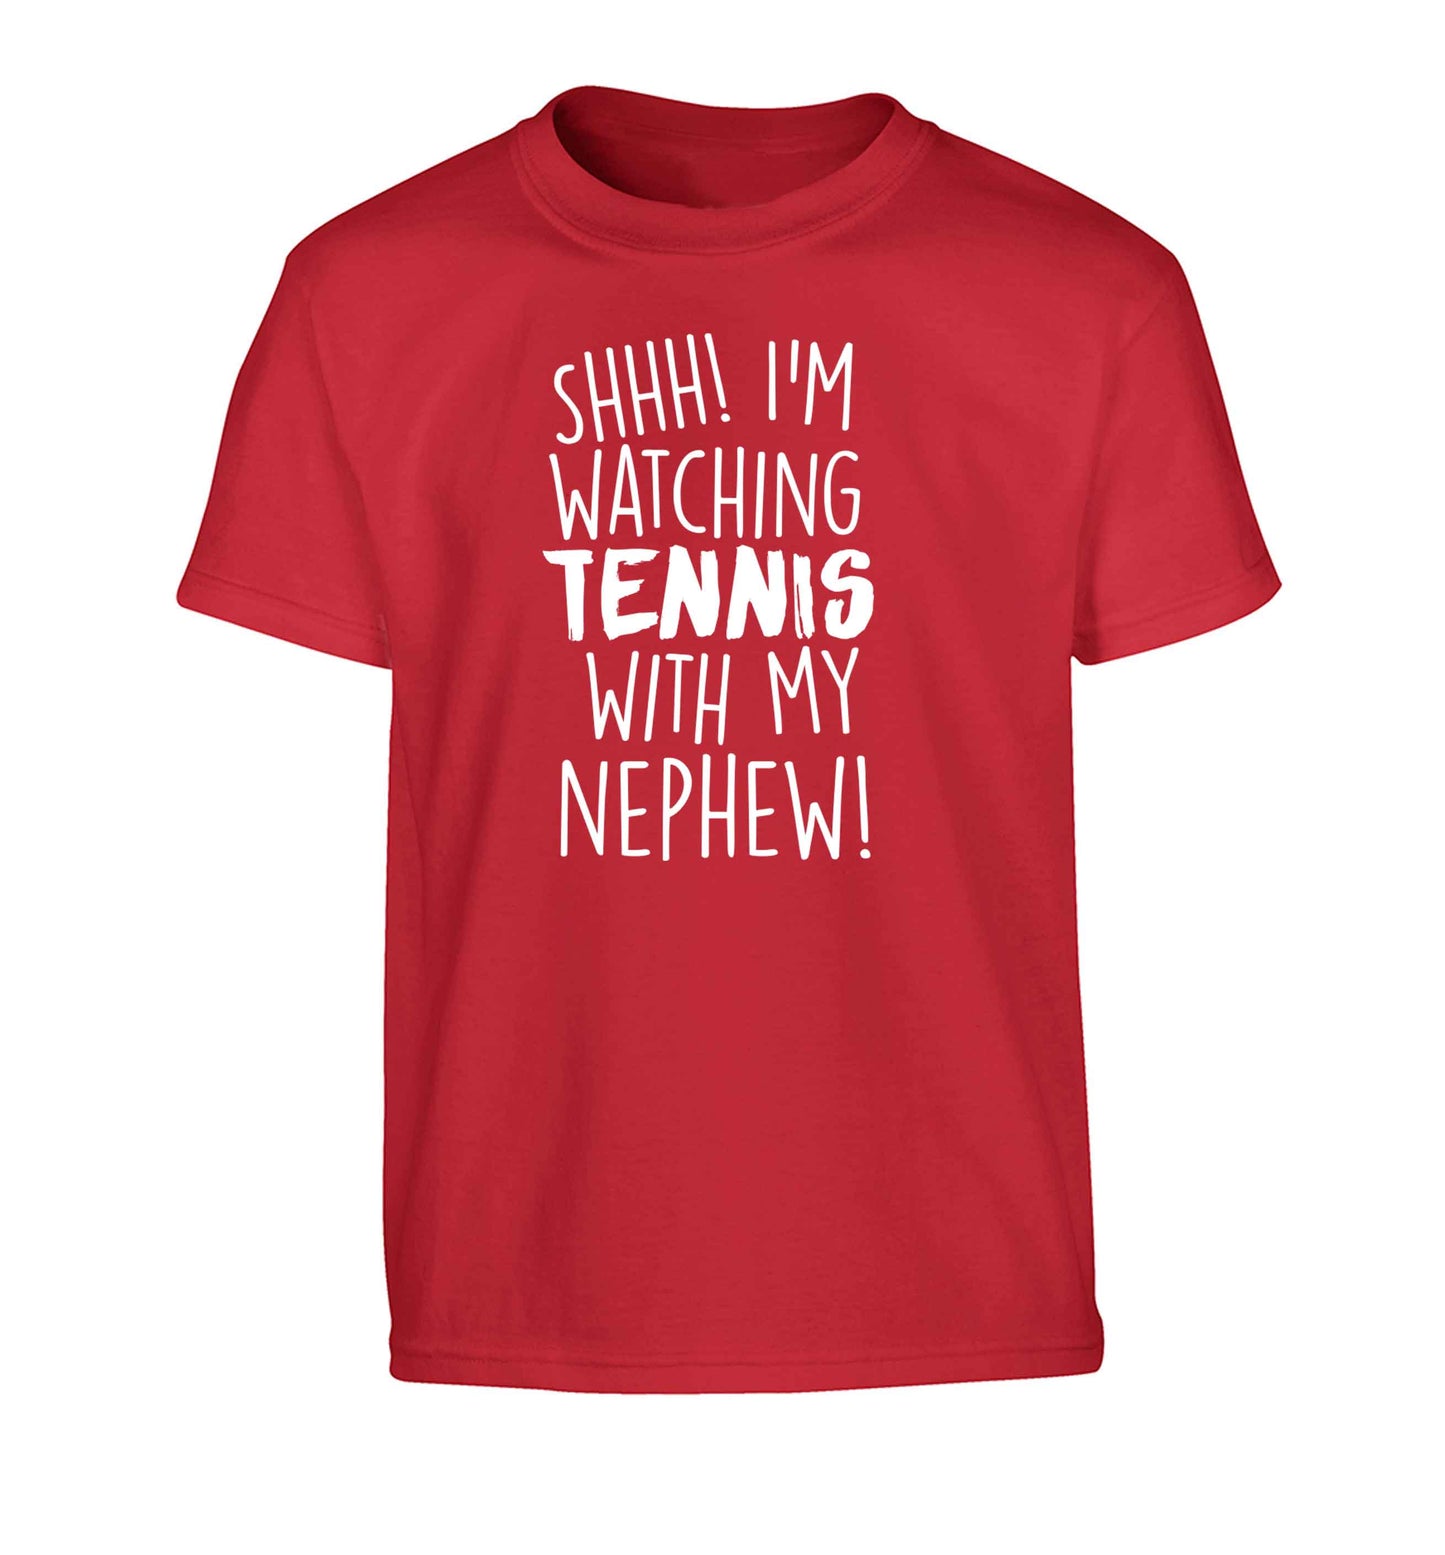 Shh! I'm watching tennis with my nephew! Children's red Tshirt 12-13 Years